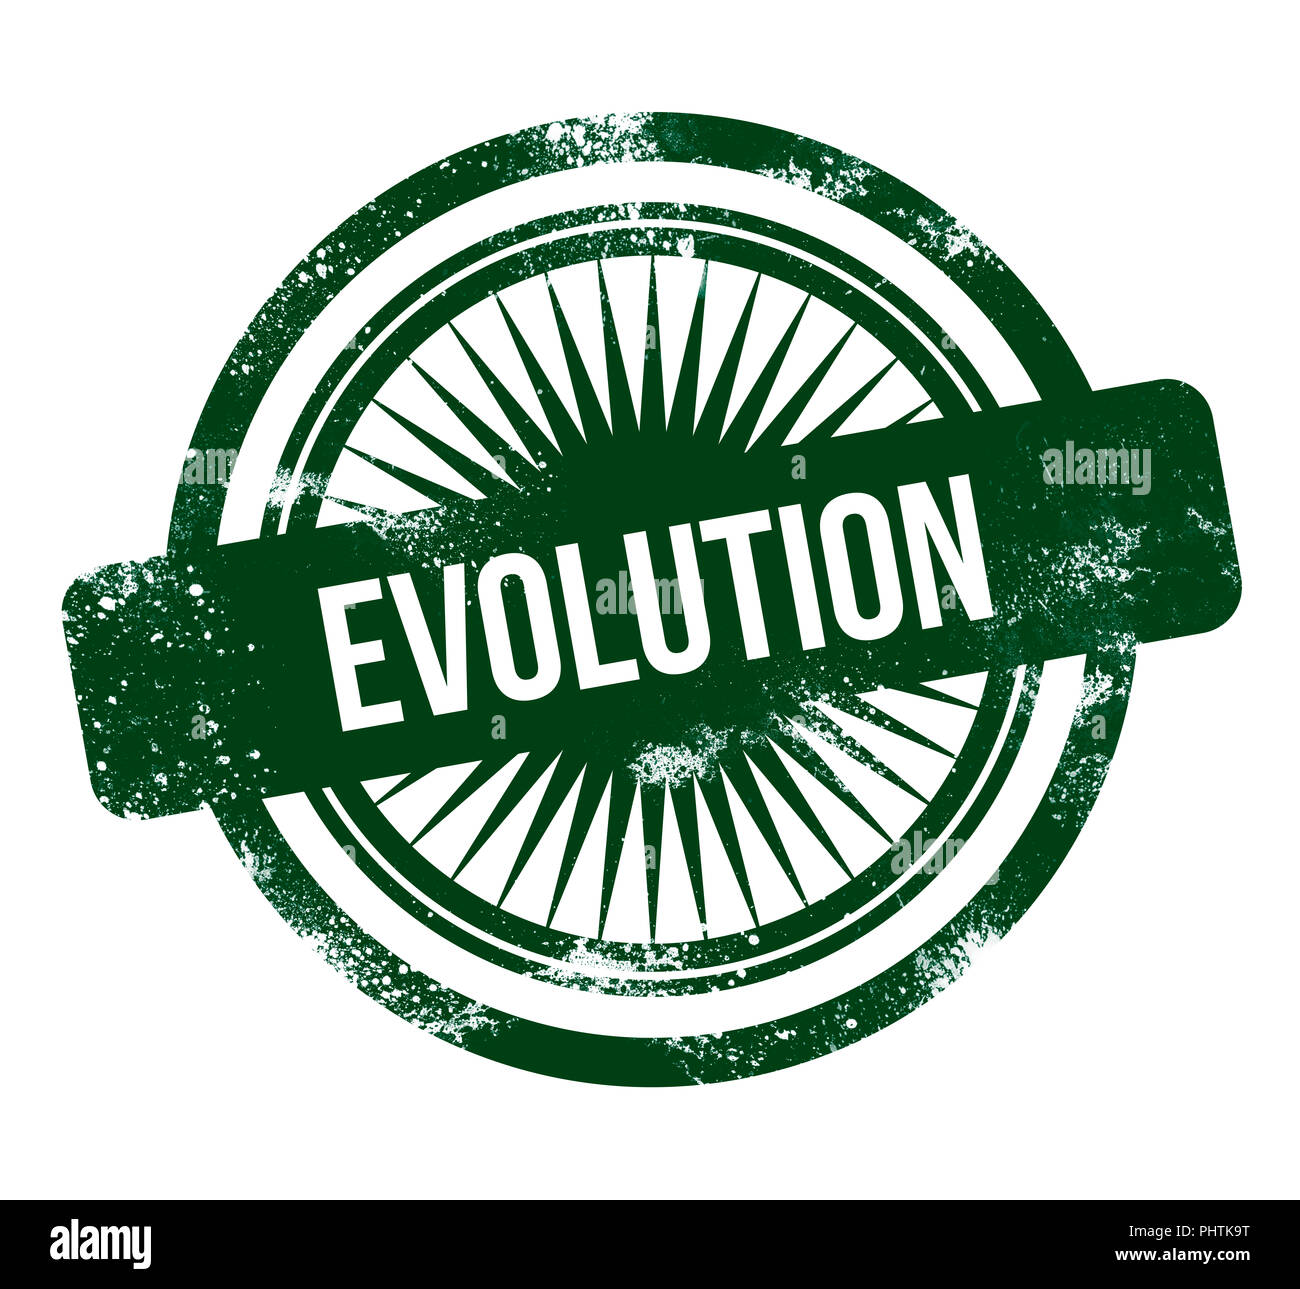 Evolution - green grunge stamp Banque D'Images